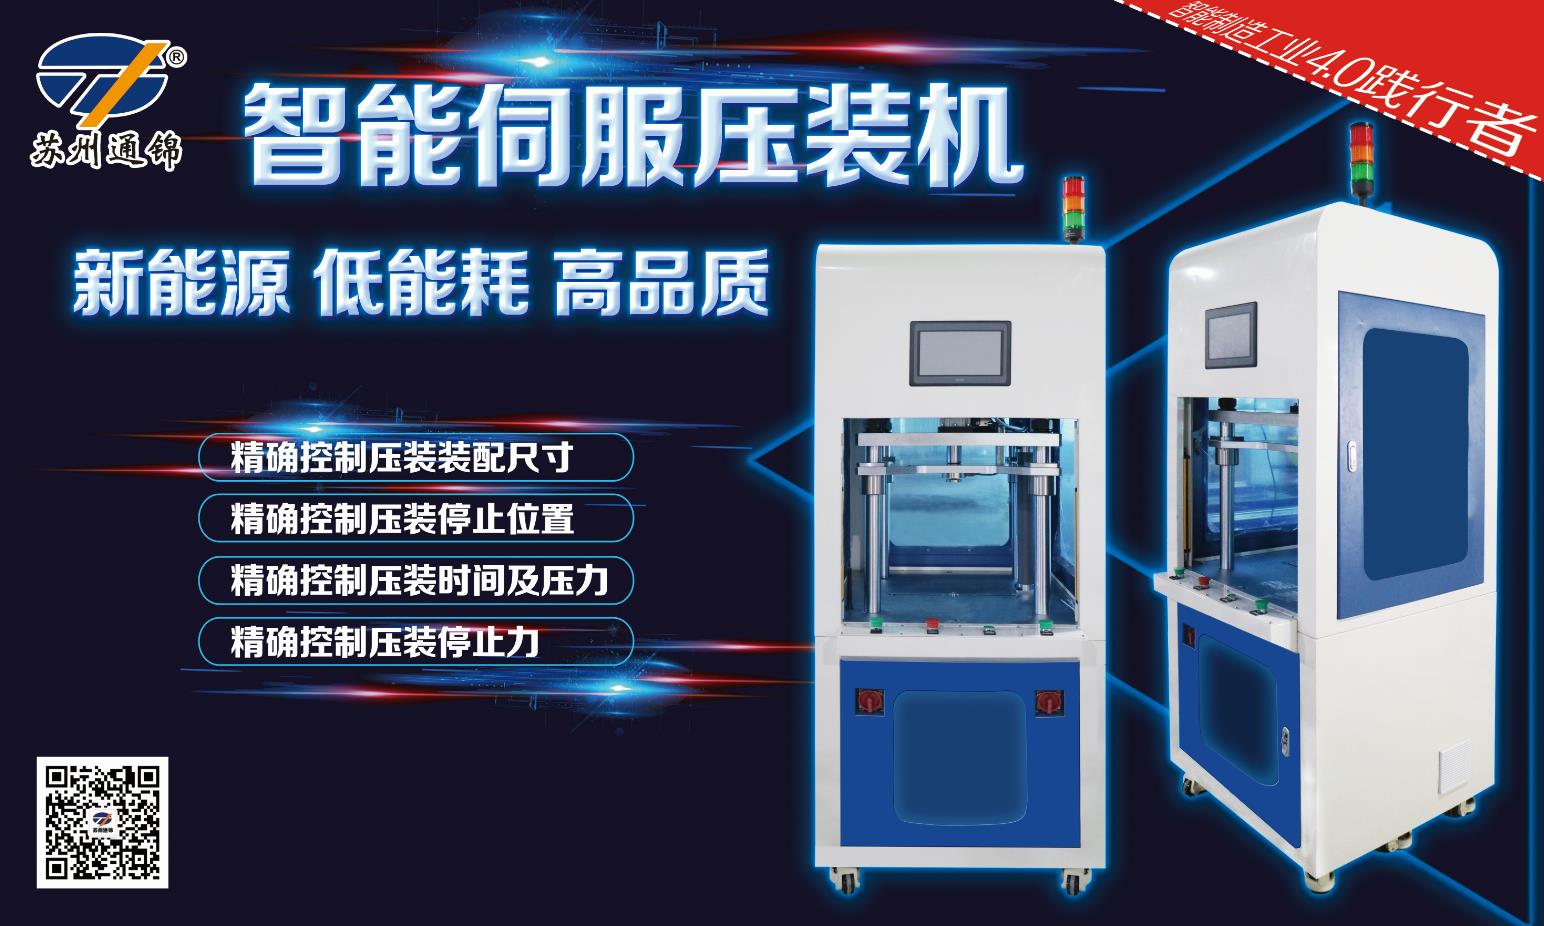 【展会专栏】2019中国工博会机器人展，我们蓄势待发！